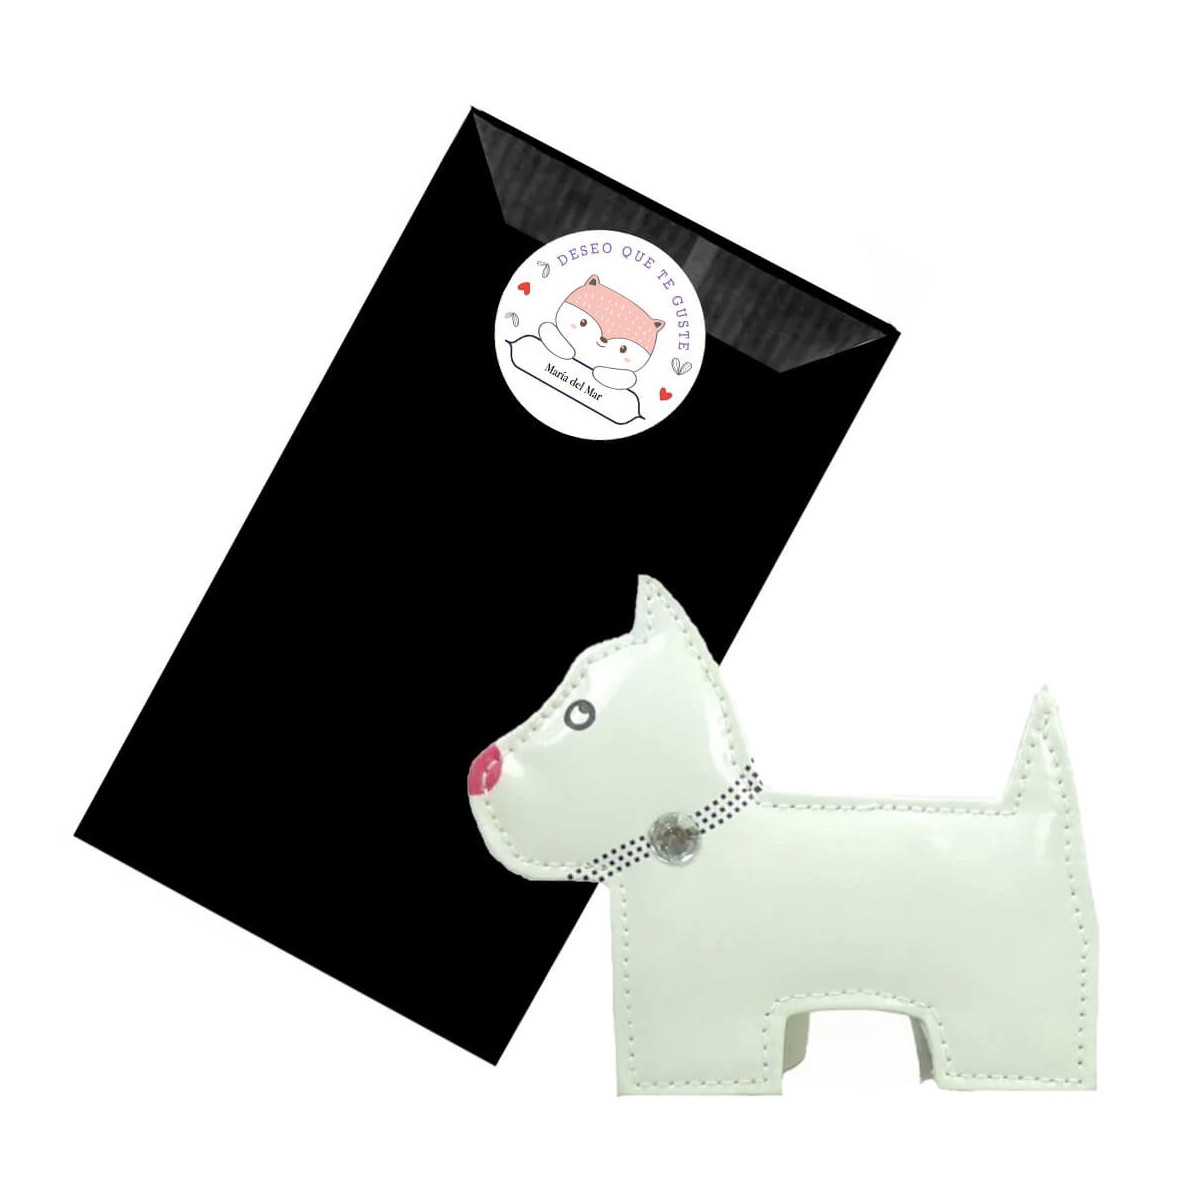 Set per manicure per cani in busta nera kraft personalizzata con adesivo con nome i wish you like it